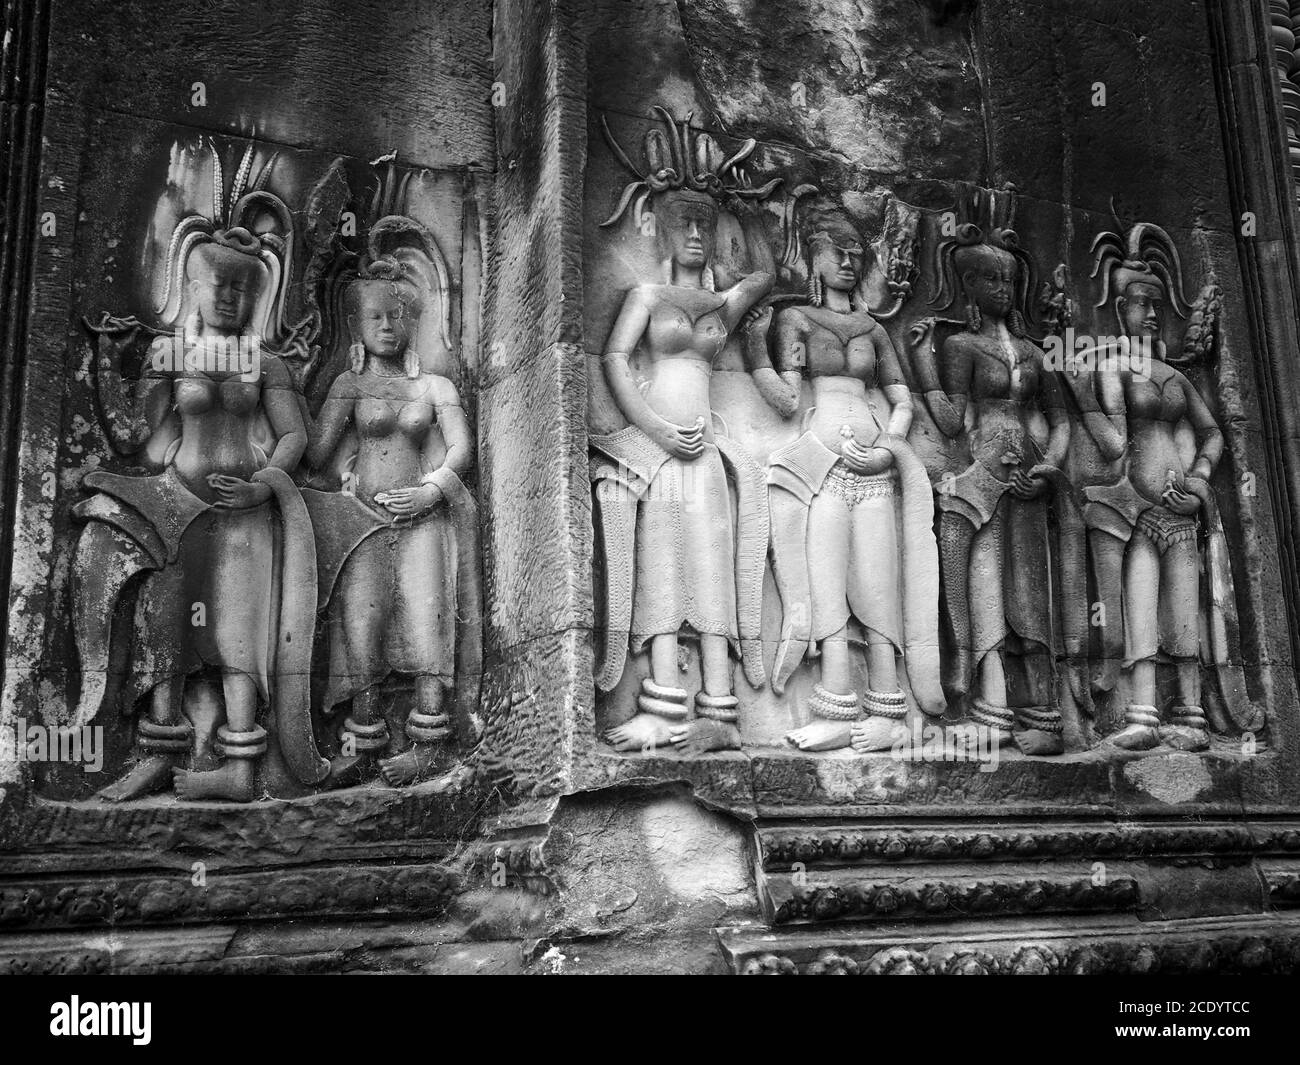 Tallas de piedra de espíritus femeninos en el templo de Angkor Wat, Siem Reap, Camboya Foto de stock